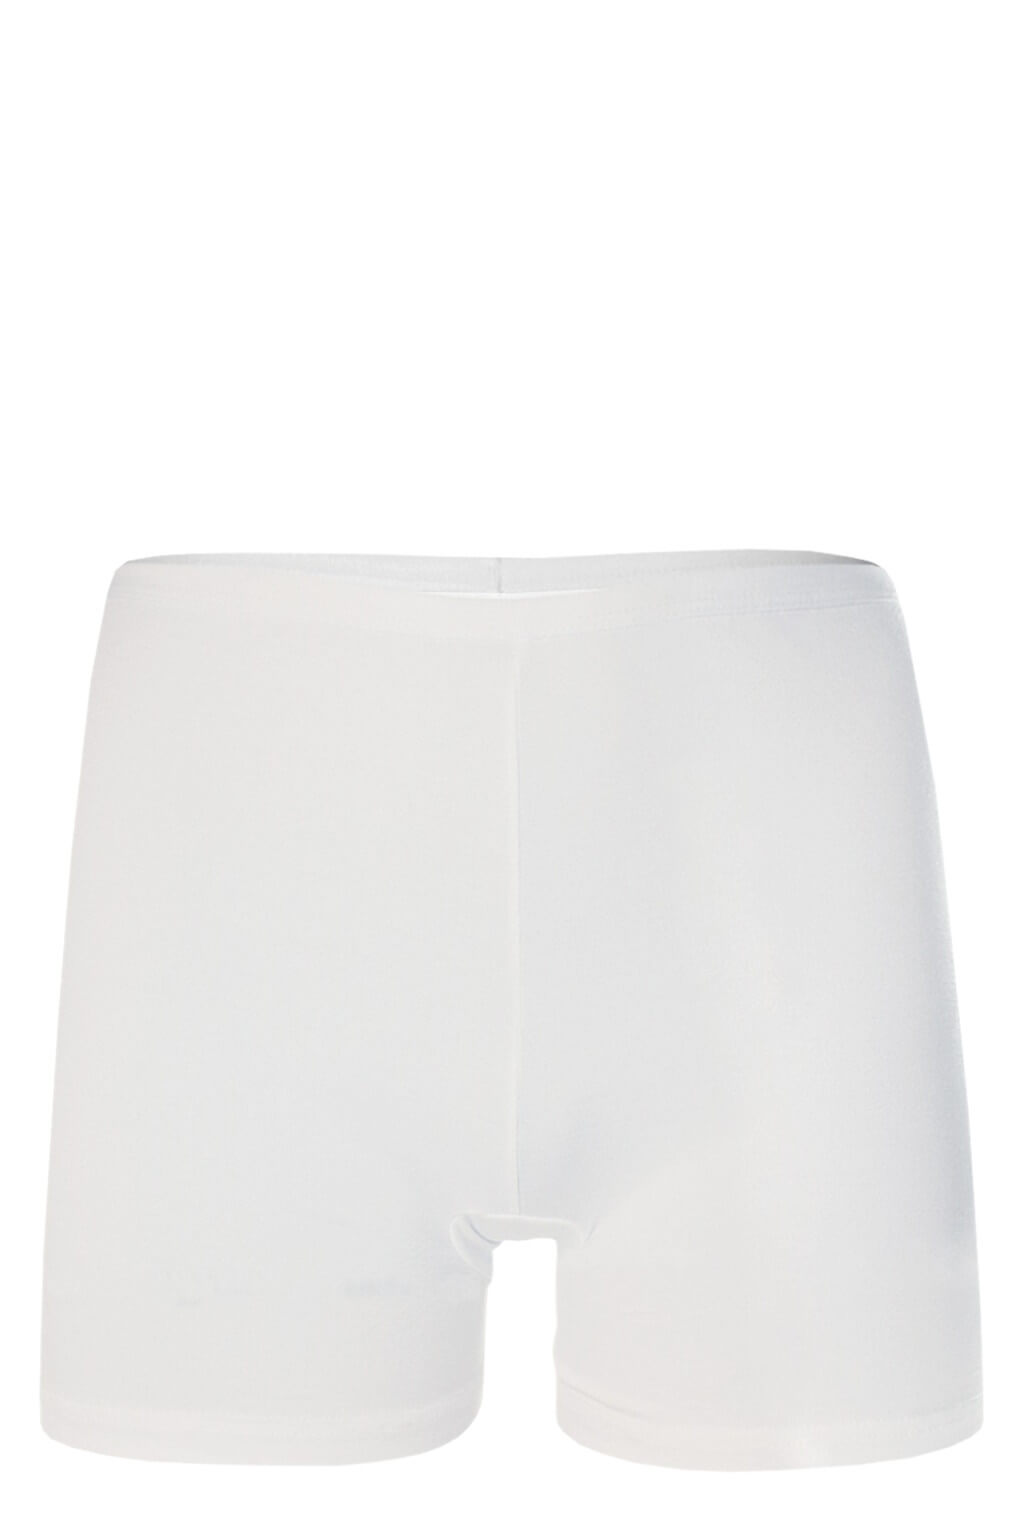 Delora nohavičkové kalhotky XL bílá